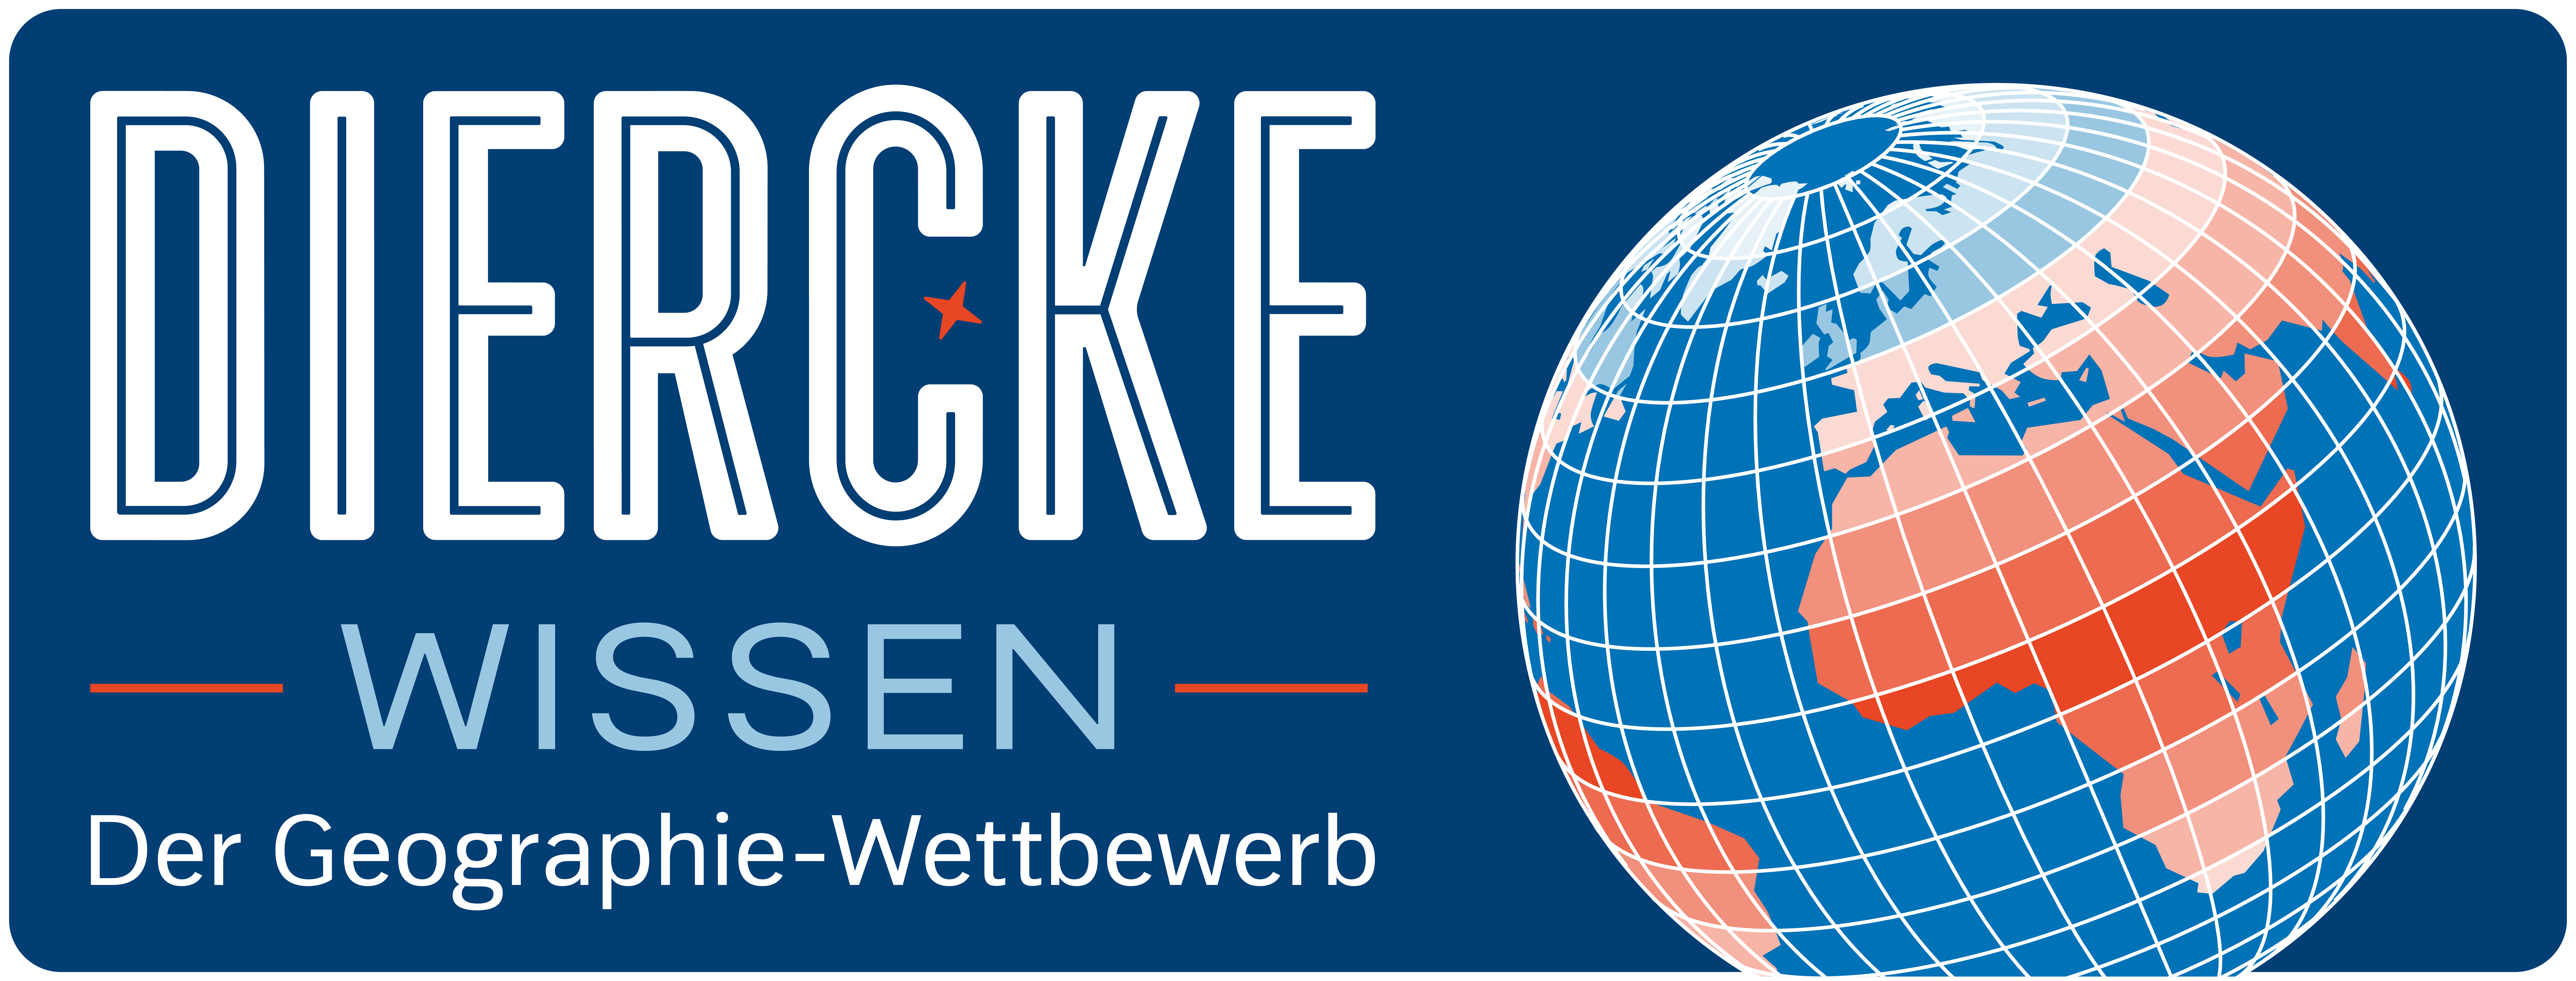 Diercke WISSEN Logo